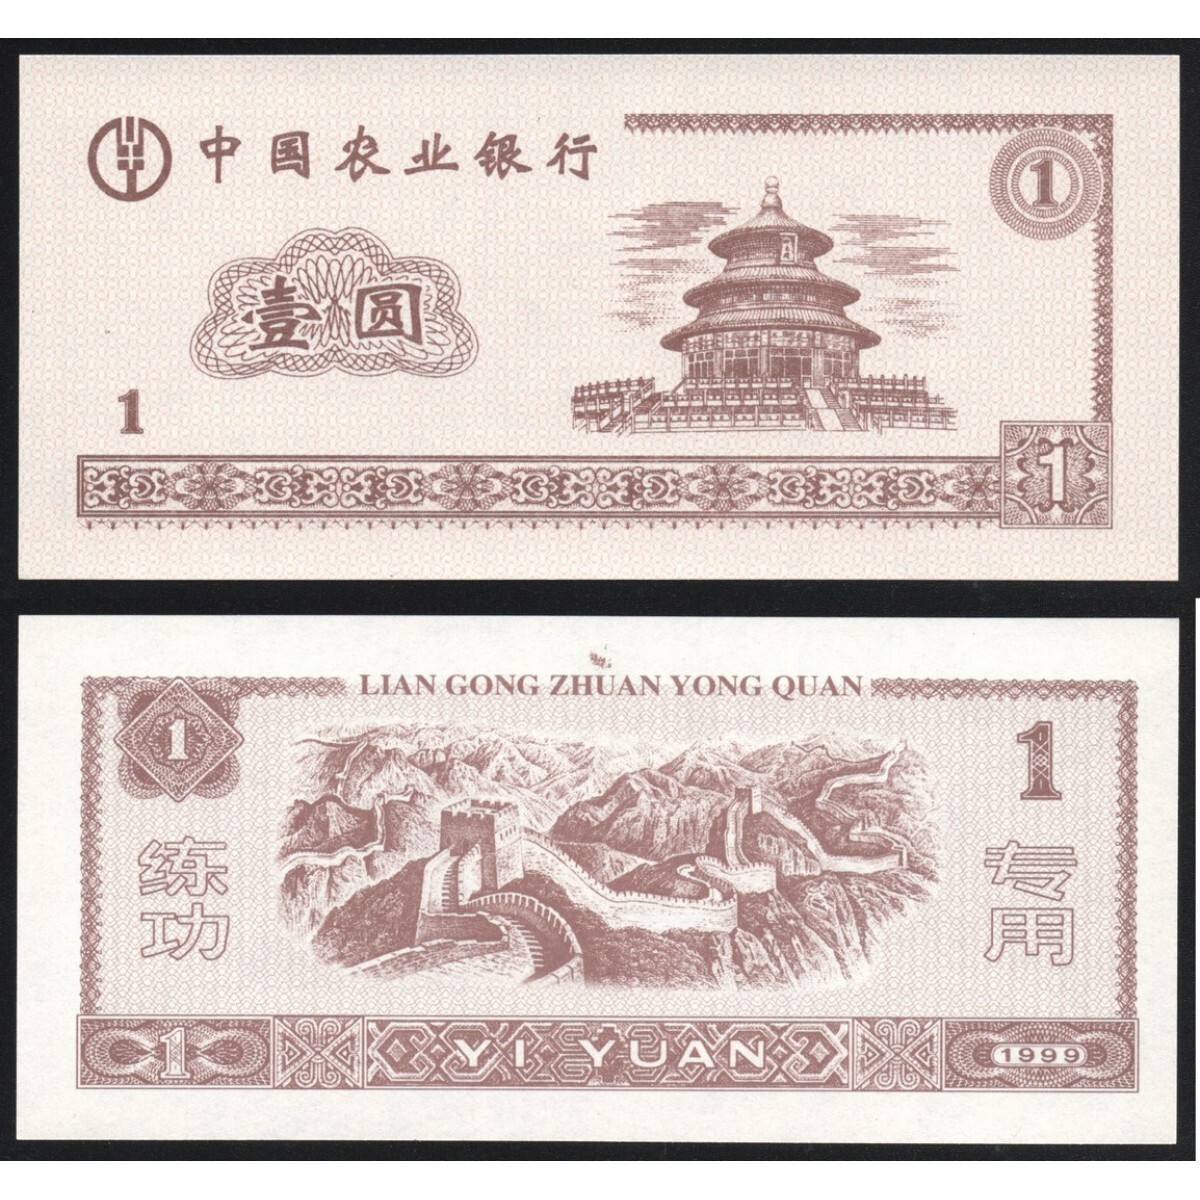 200 000 юаней. Китайские банкноты 1 Yuan 1999. Банкнота Китая Lian Gong. 1 Юань 1999 года. Китайская валюта в рублях.